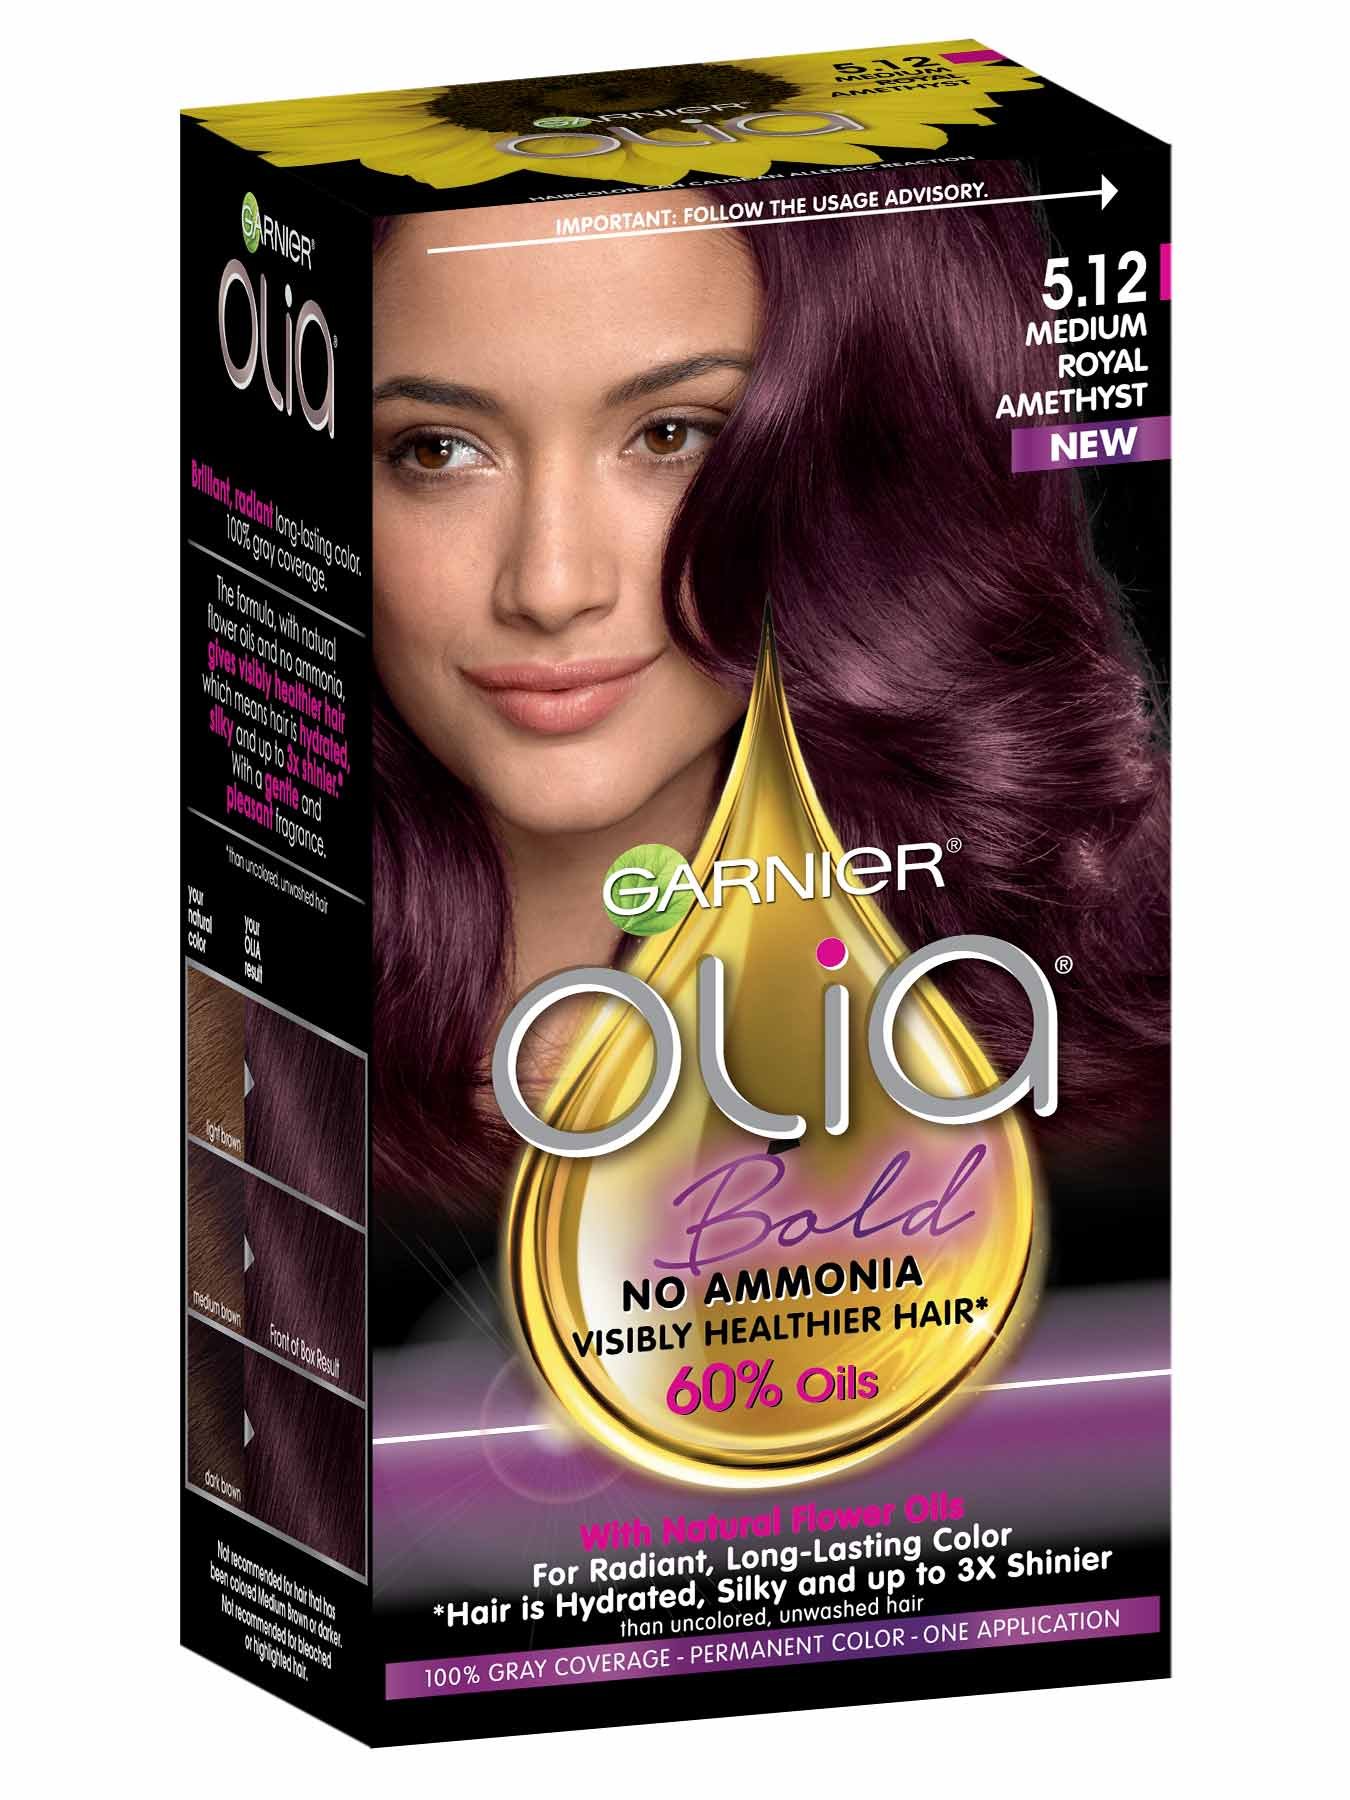 Olia Medium Royal Amethyst Hair Color – Ammonia-Free Hair Dye – Garnier